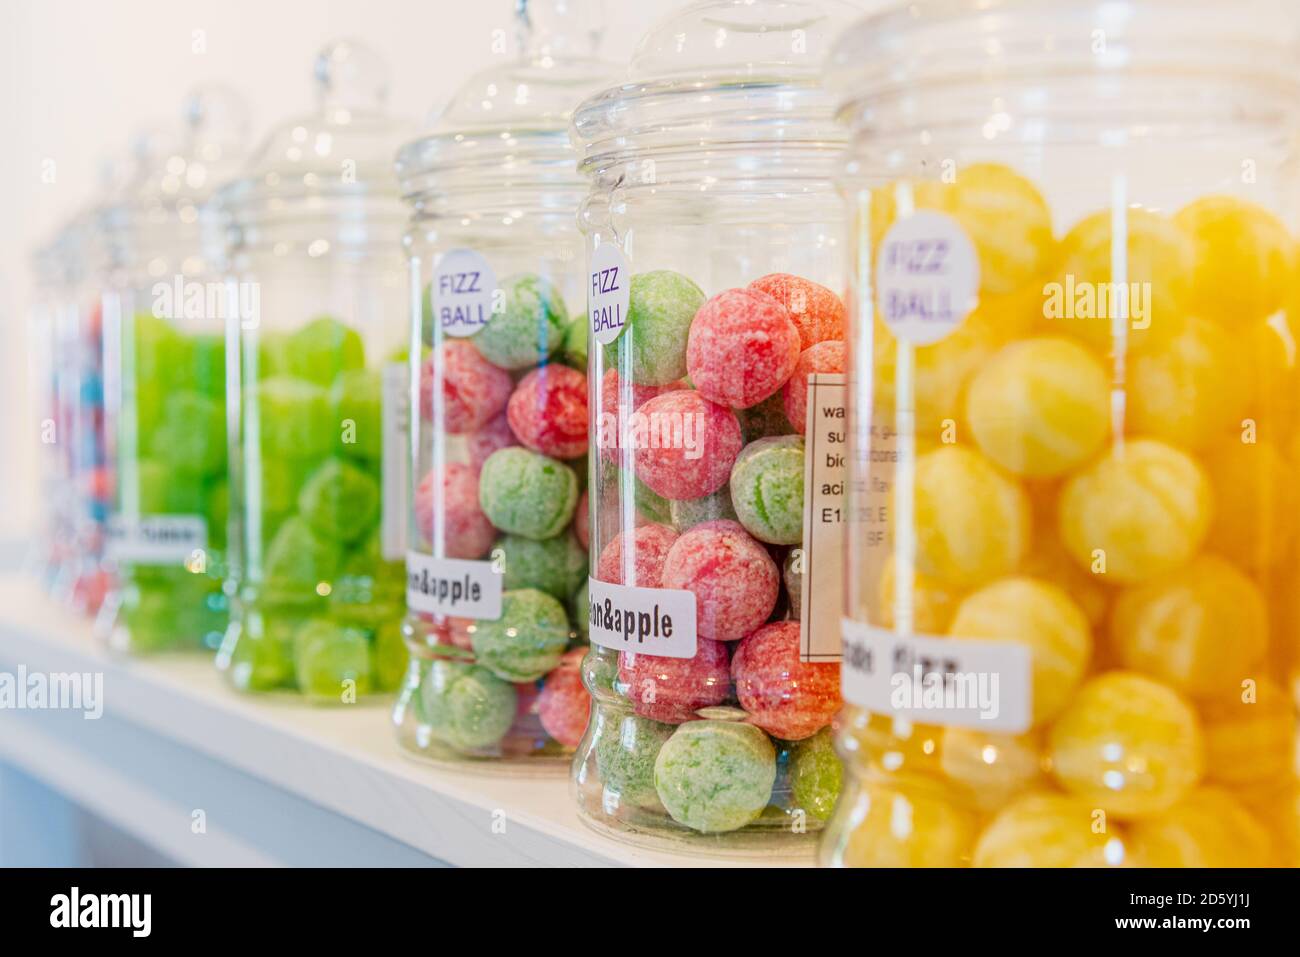 Bocaux en verre étiquetés de sucreries vertes, jaunes, rouges et bleues sur une étagère blanche dans un magasin de sucreries. Banque D'Images